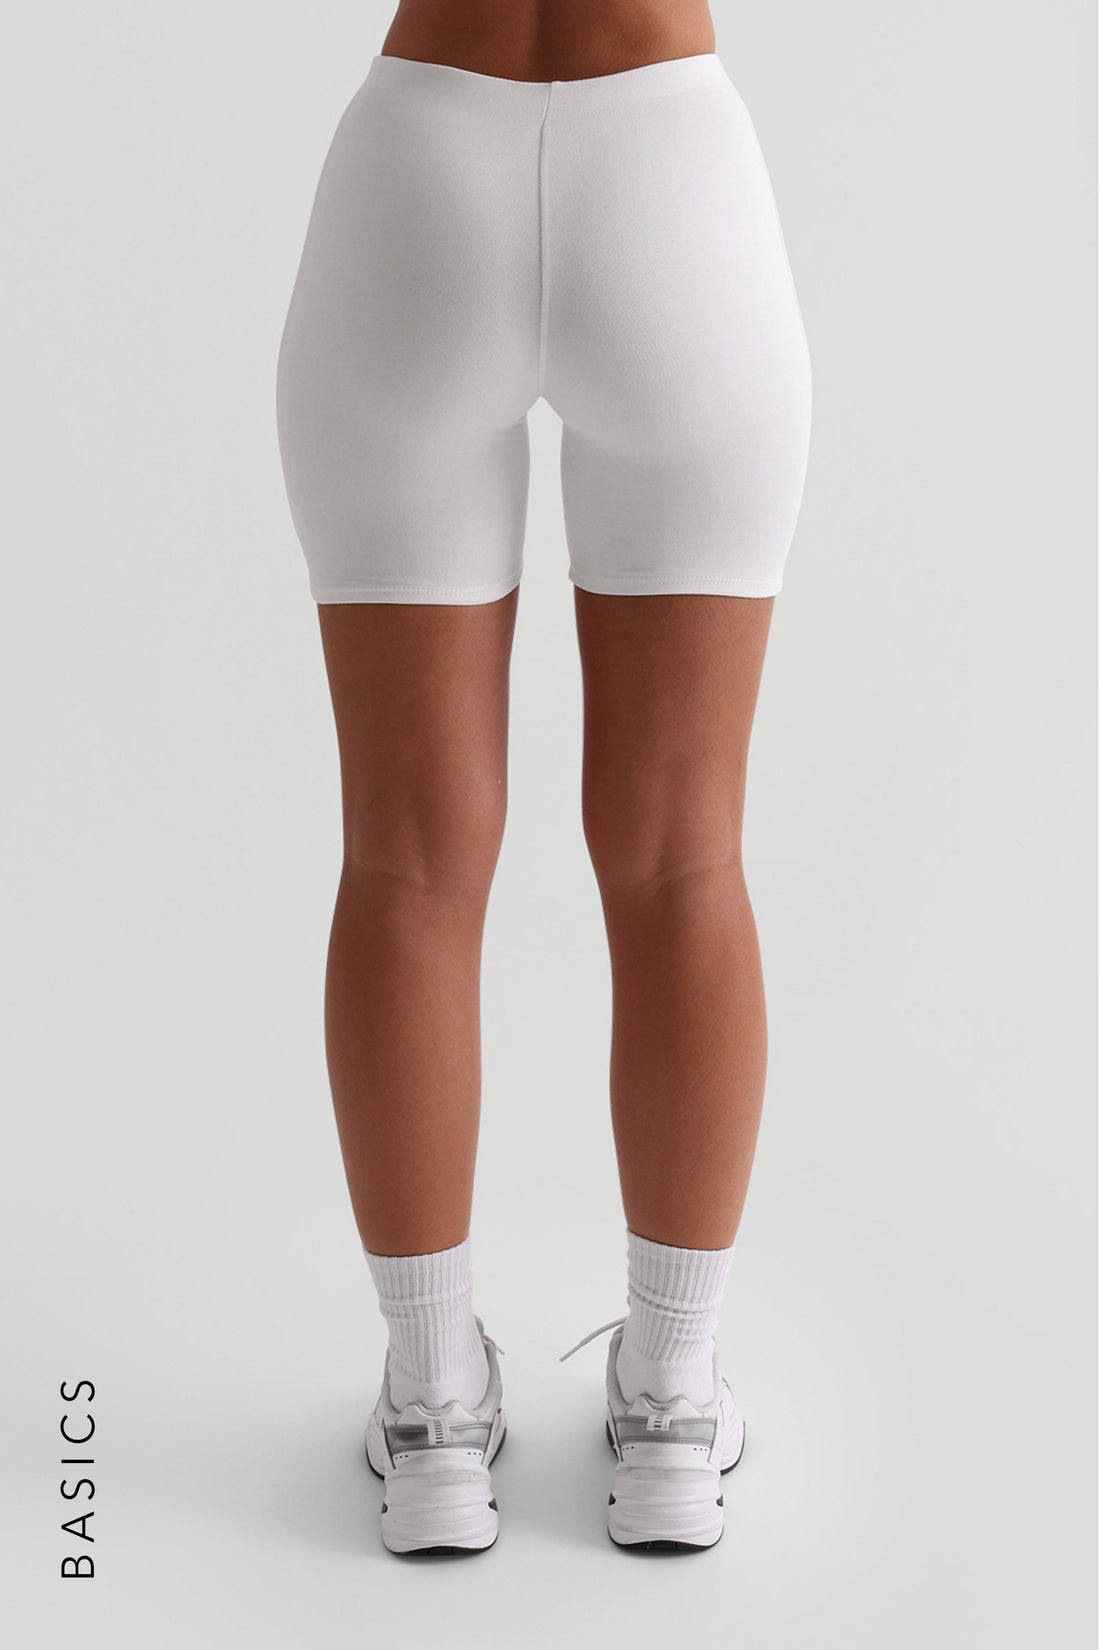 Pro-Technical Biker Shorts 6" - White